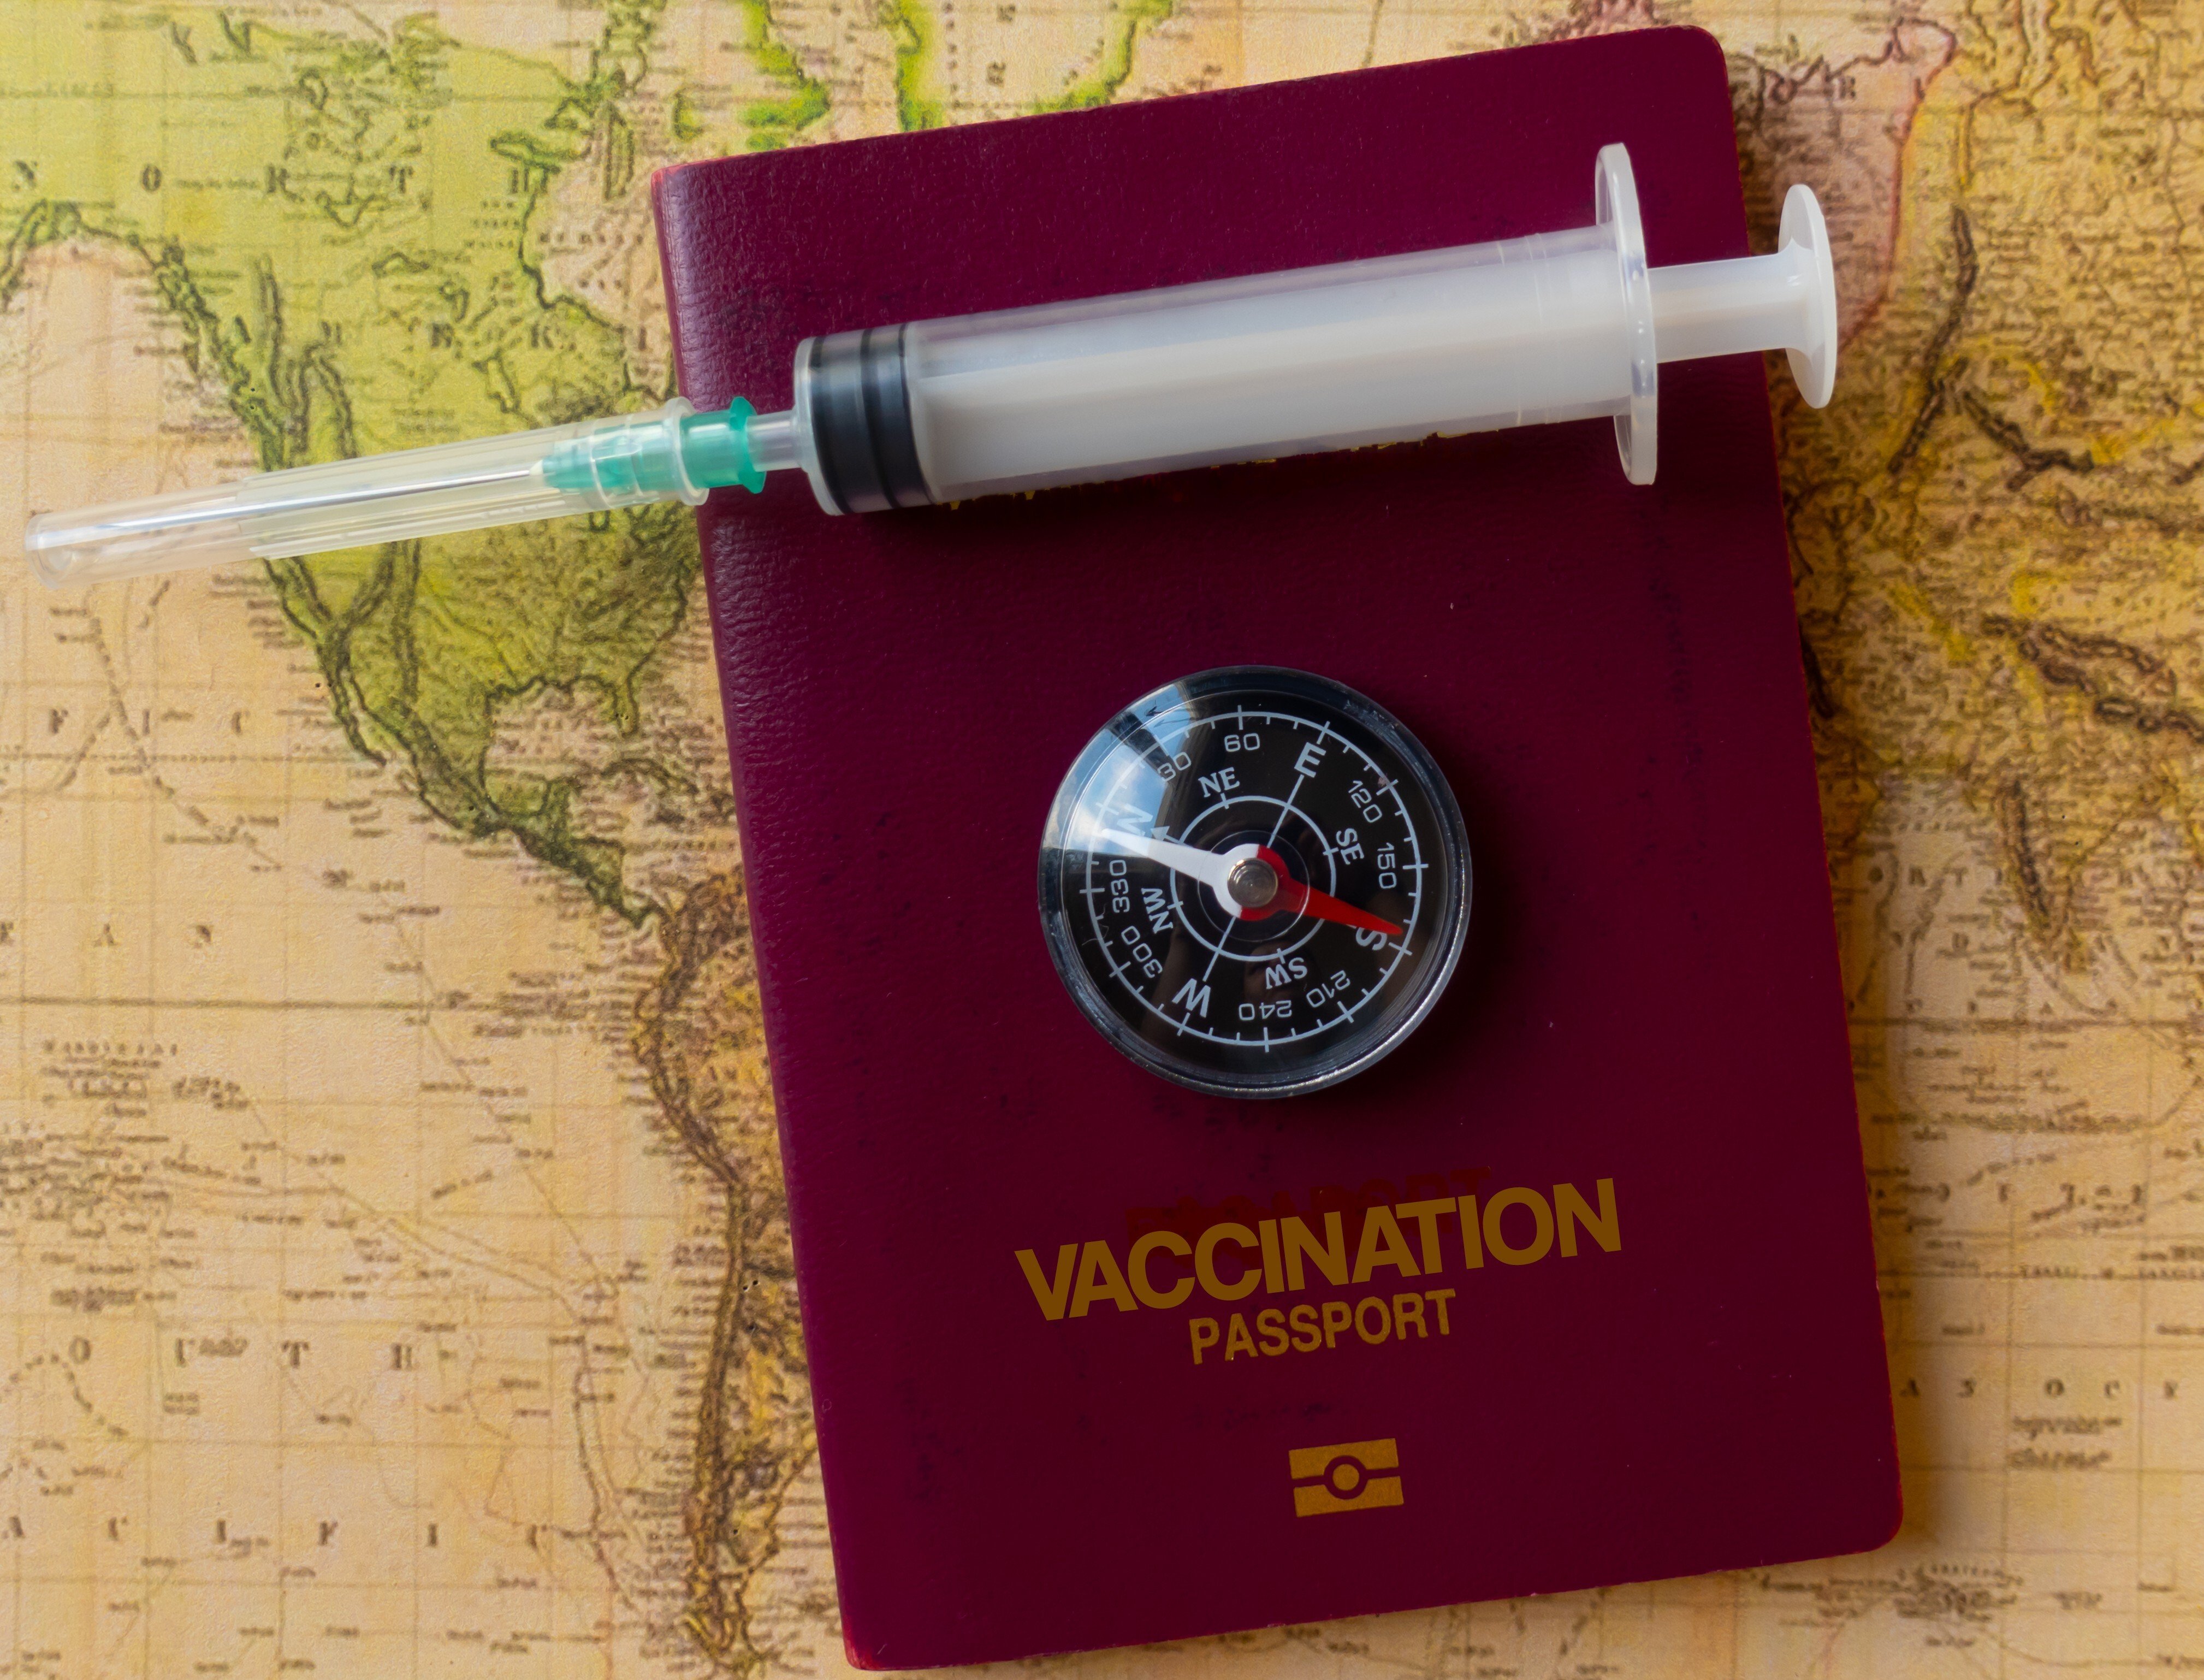 Vaccination passports. Photo: Shutterstock